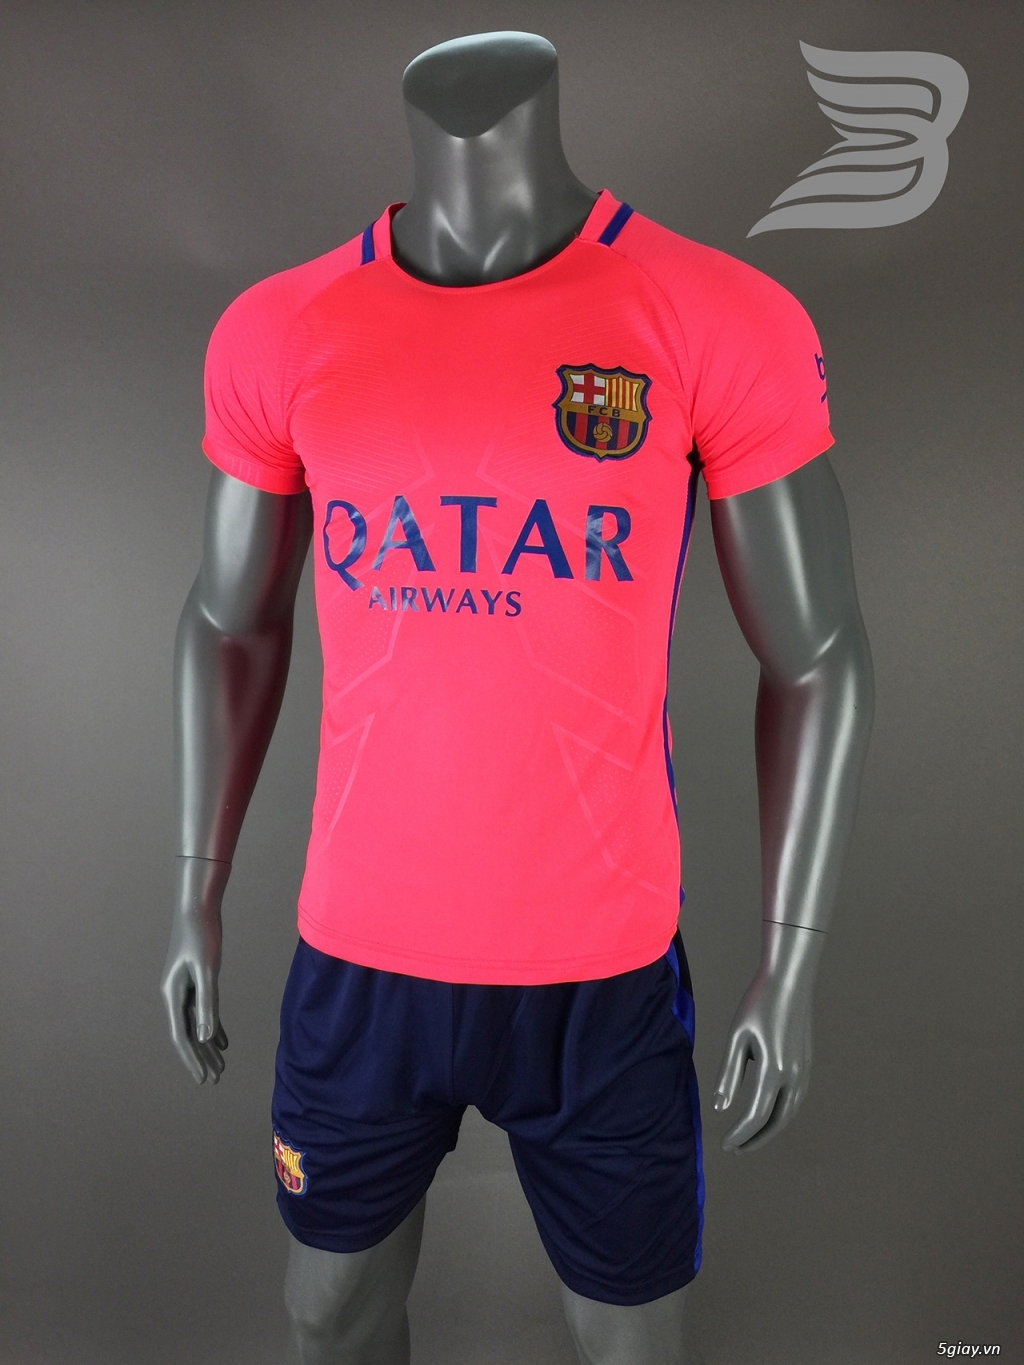 BẢO UYÊN SPORT - Chuyên cung cấp quần áo bóng đá với giá cạnh tranh kèm nhiều ưu đãi - 7